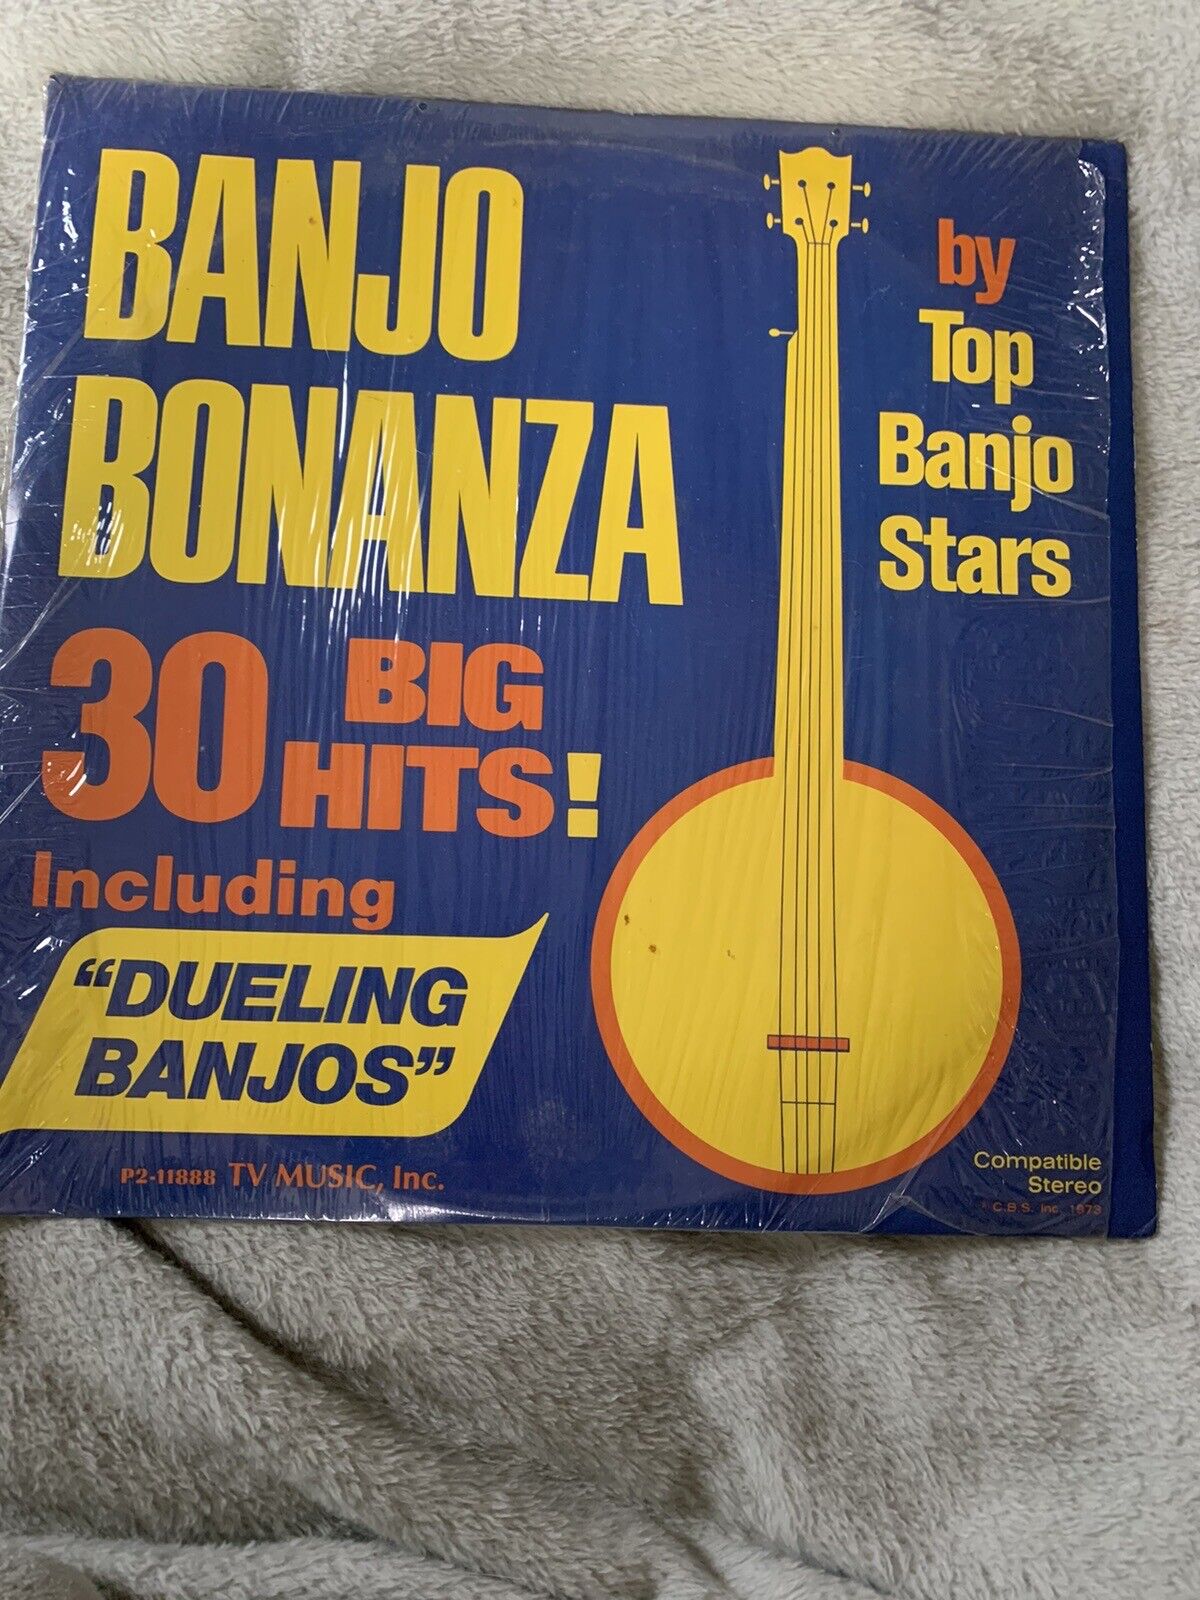 Banjo Bonanza 30 Big Hits By Top Banjo Stars 1973 VINYL Double LP VG